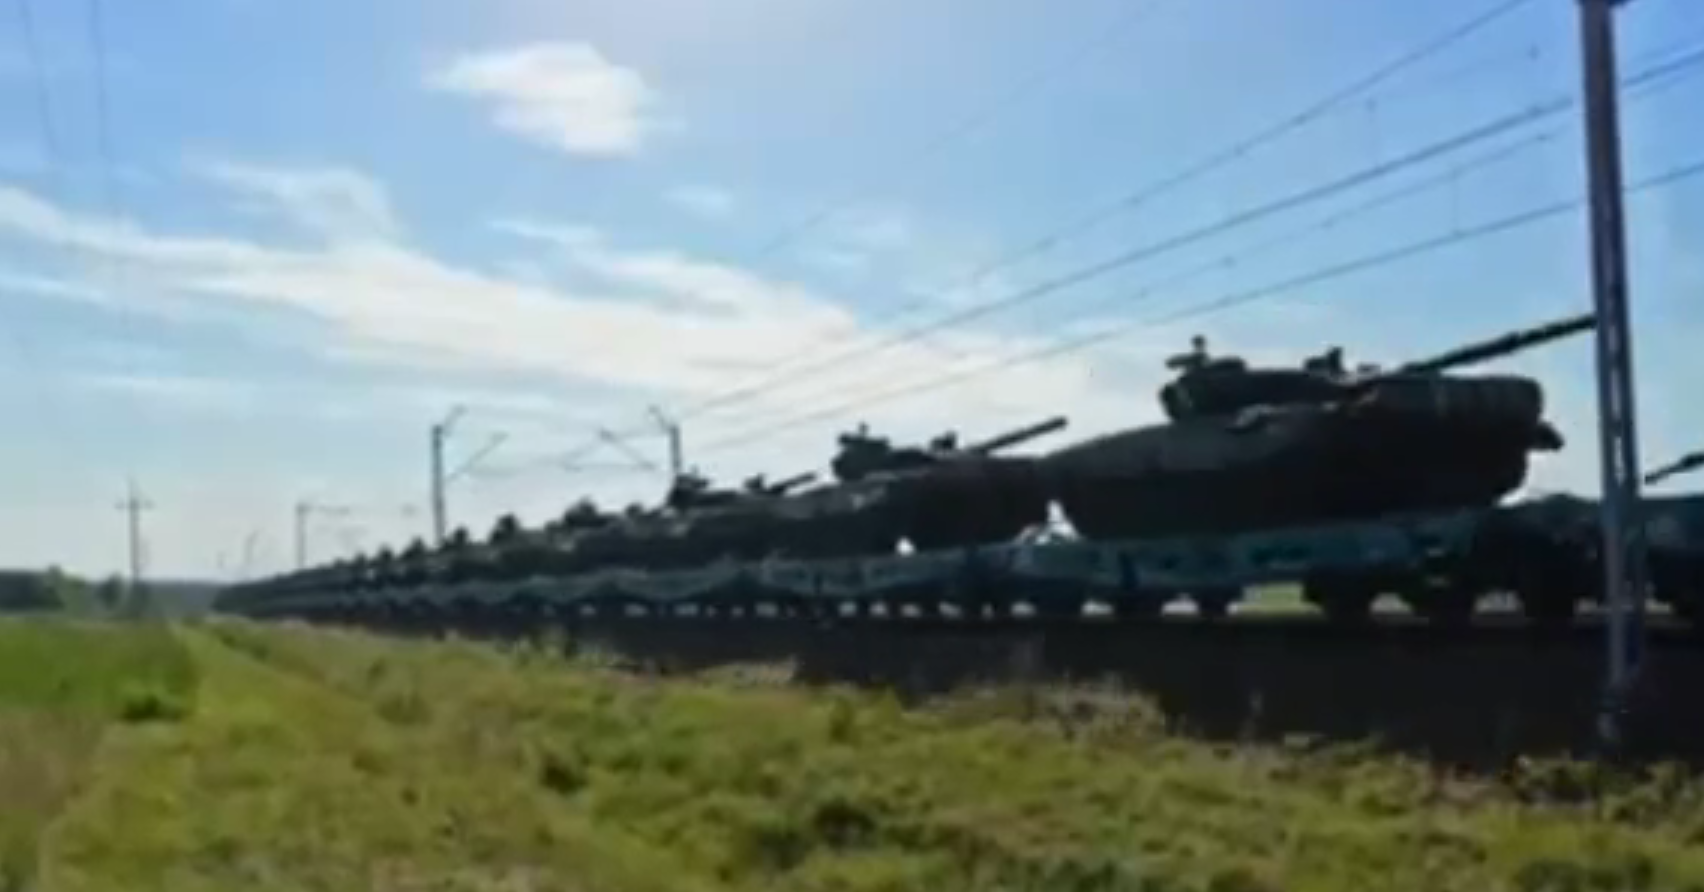 Ein Geschwader von PT-91 Twardy-Panzern wurde in Polen auf dem Weg zur ukrainischen Grenze gesichtet